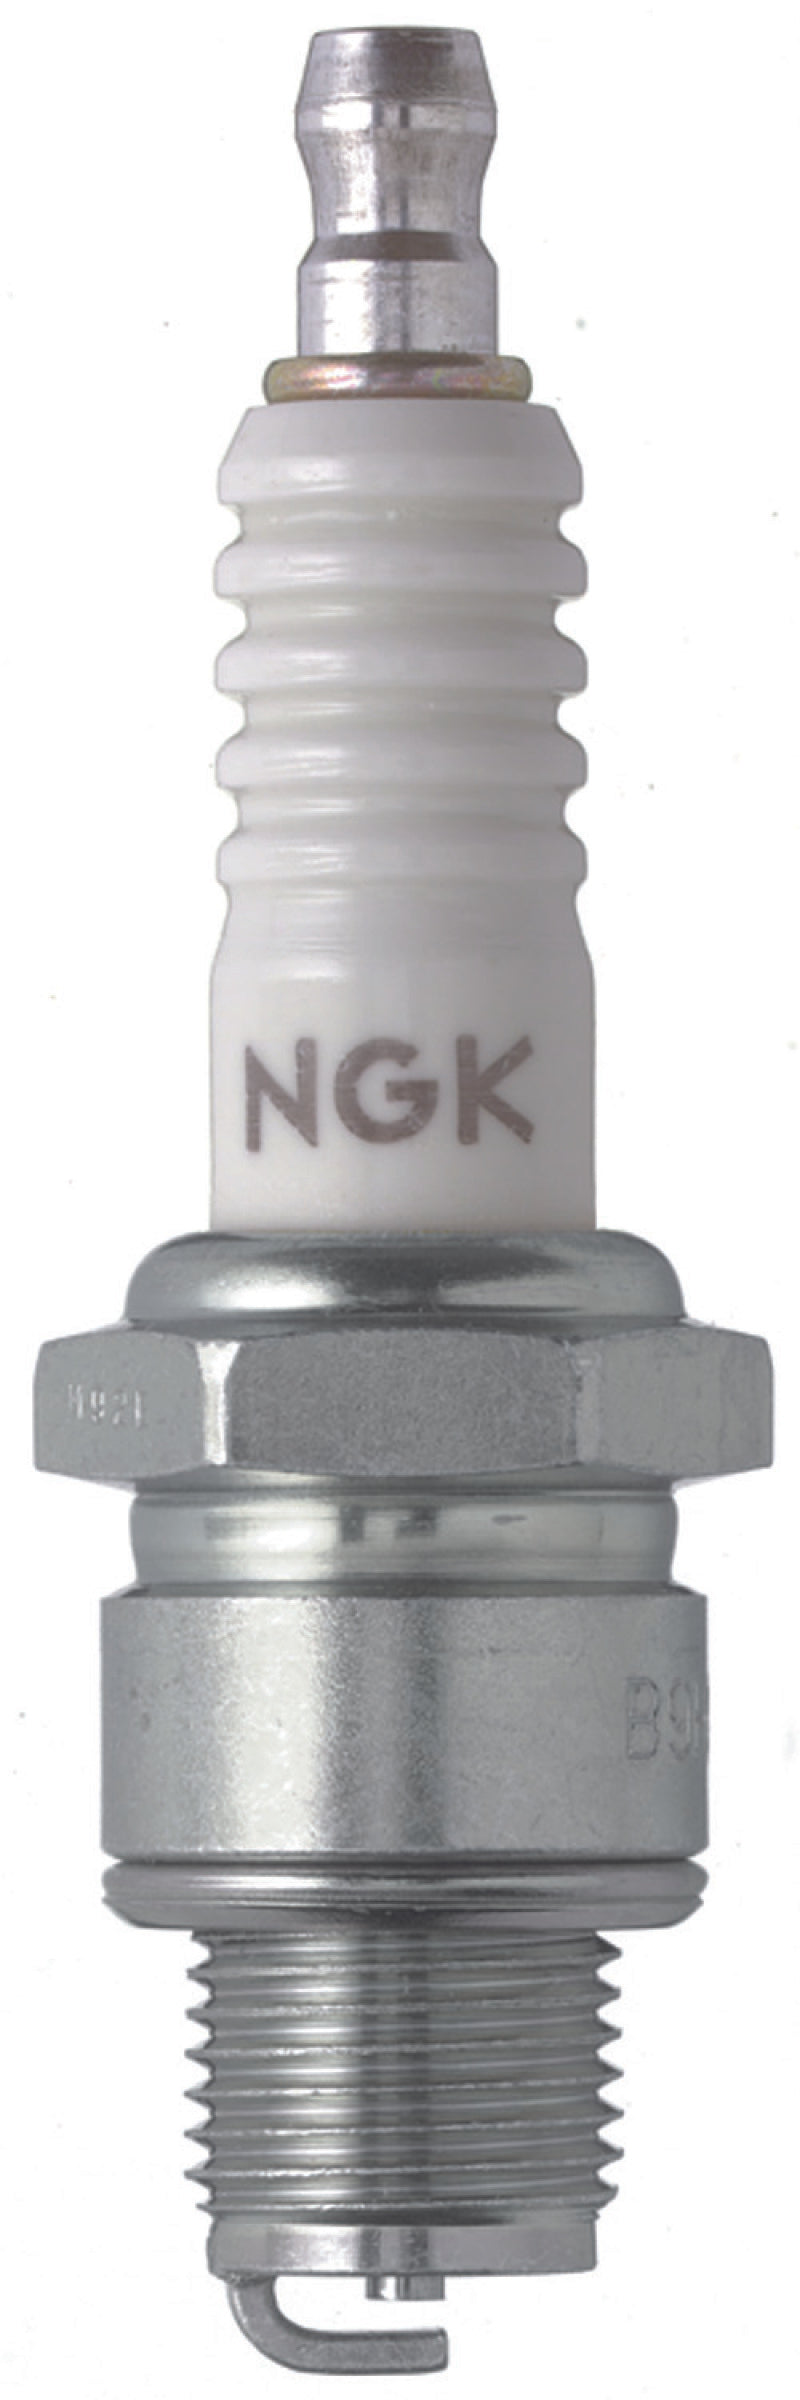 NGK Shop Pack Spark Plug Box of 25 (B7HS-10)